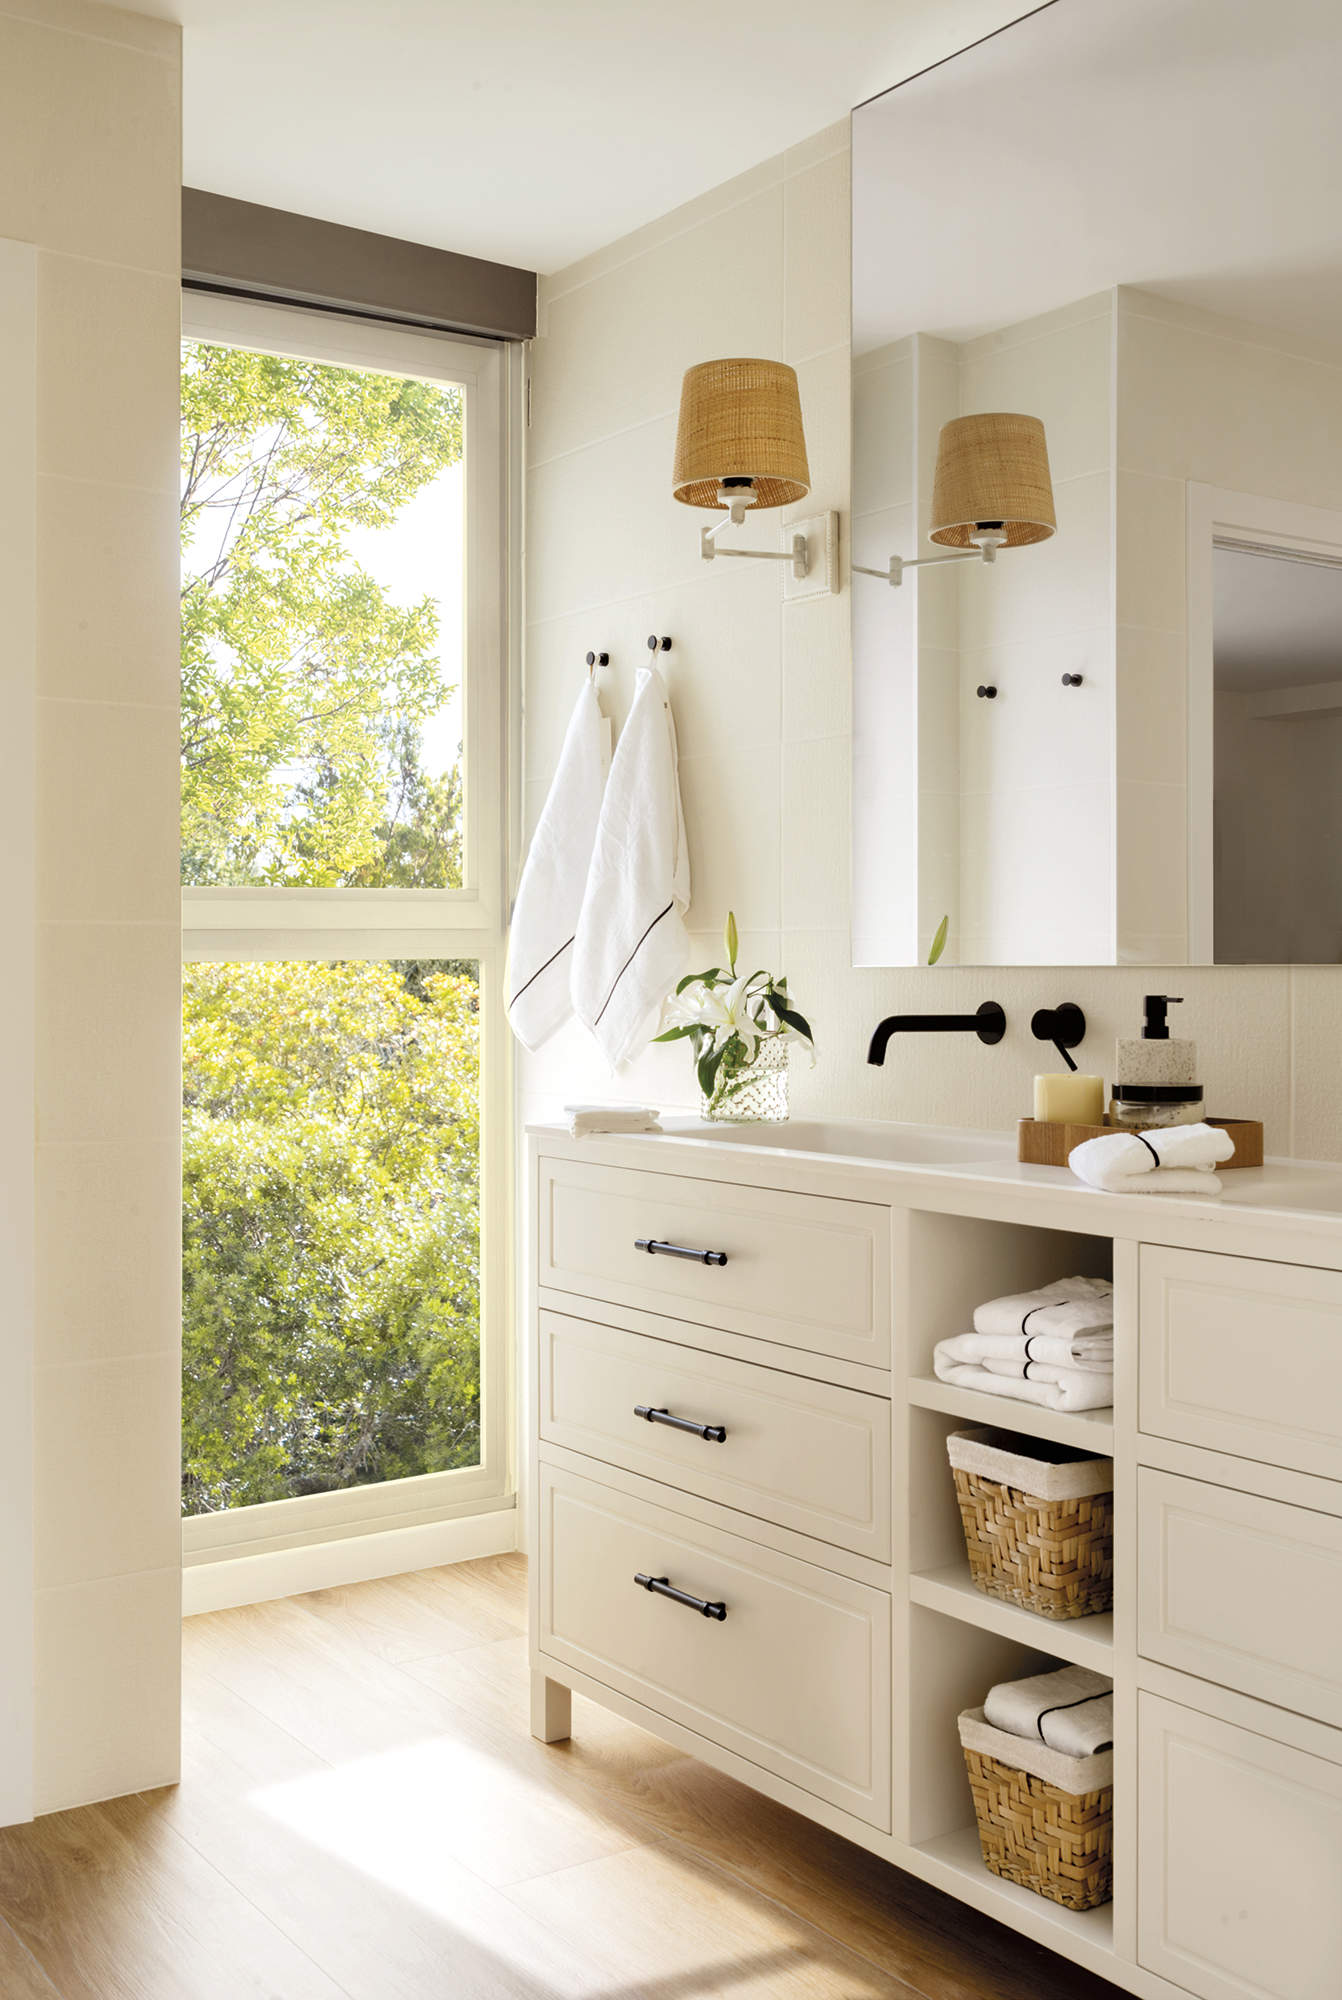 Baño con mueble de dos senos, grifería negra empotrada, espejo grande y aplique de pared, ventanal y suelo de madera